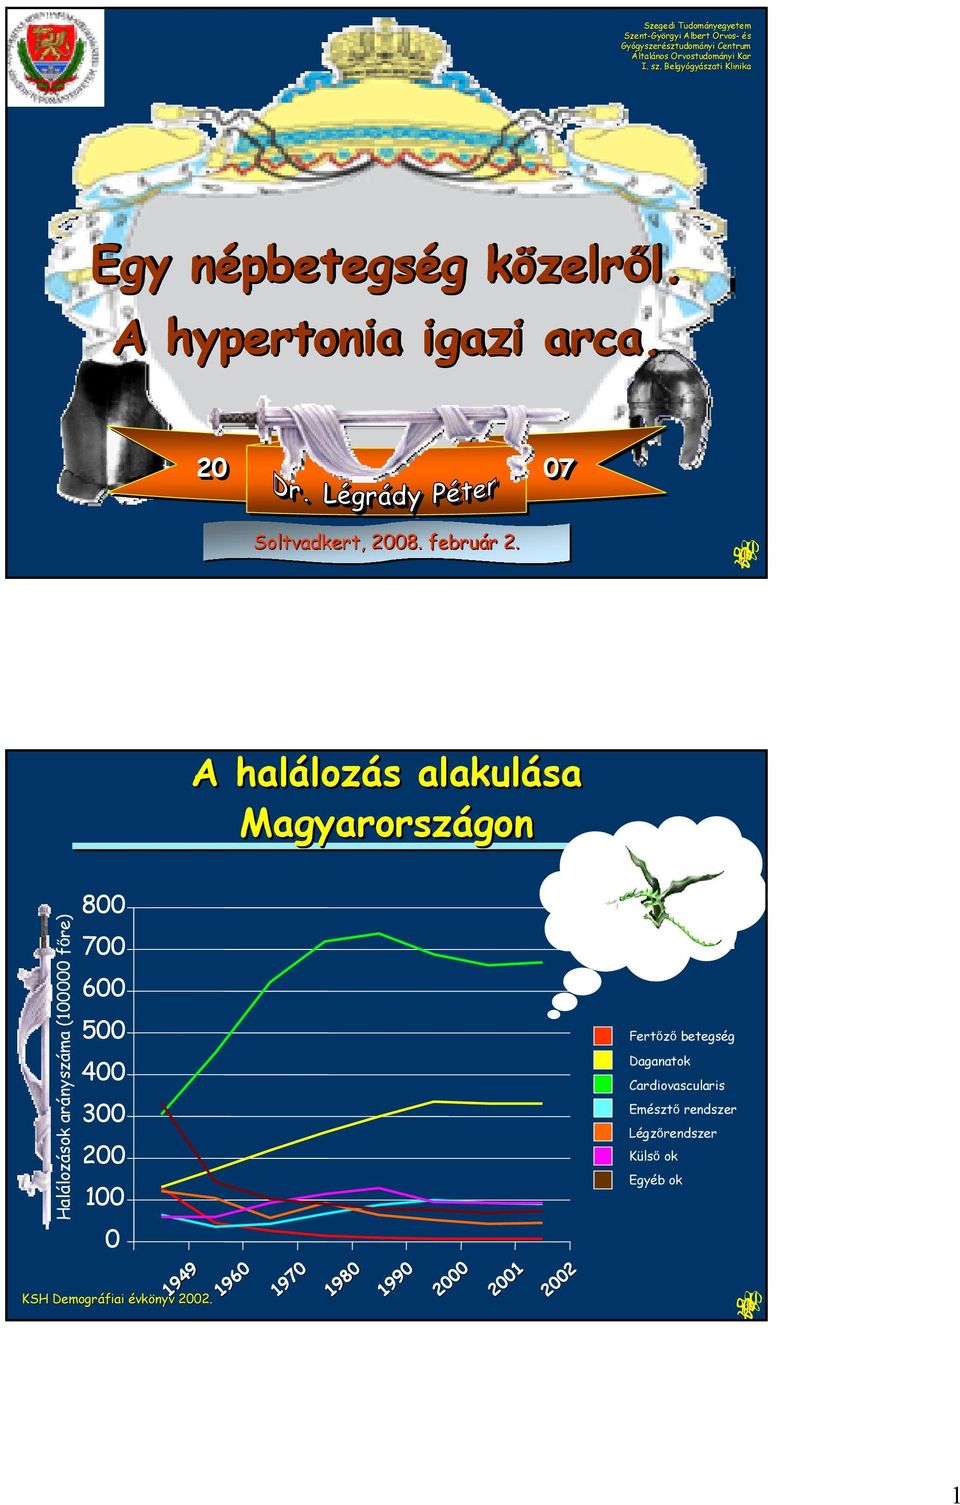 A halálozás lozás s alakulása Magyarországon gon Halálozások arányszáma (1 főre) 8 7 6 5 4 3 2 1 Fertőző betegség Daganatok